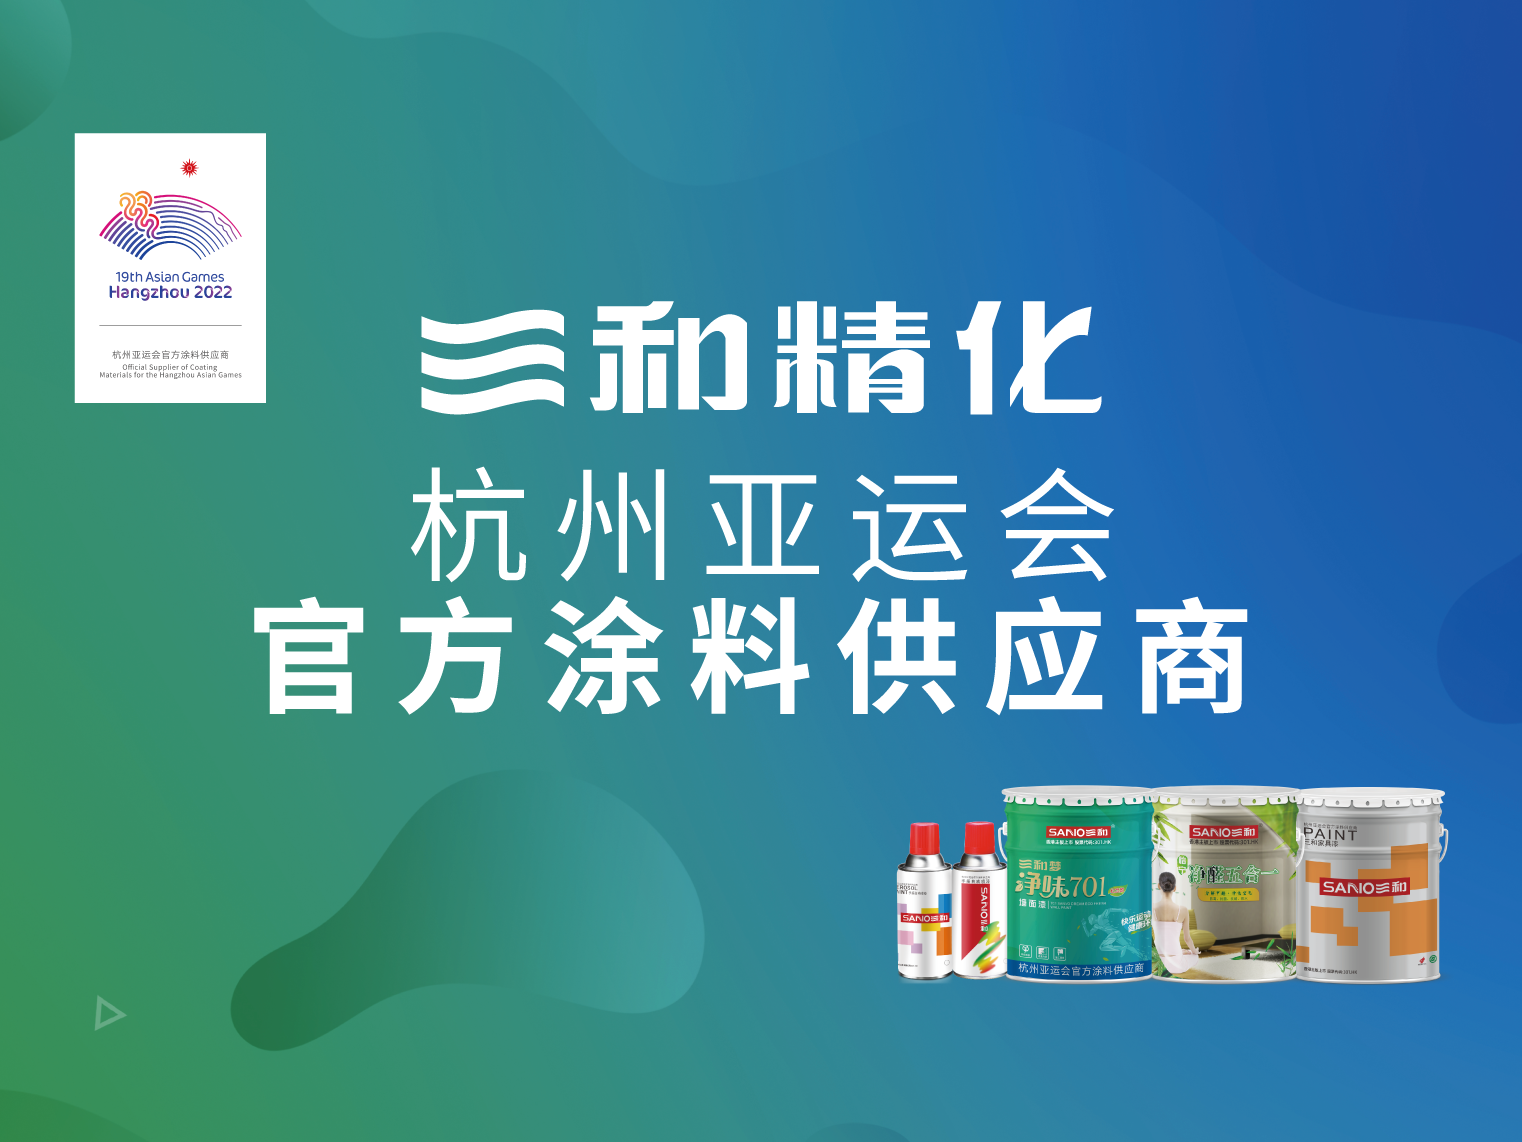 三和精化杭州亞運會官方涂料供應商